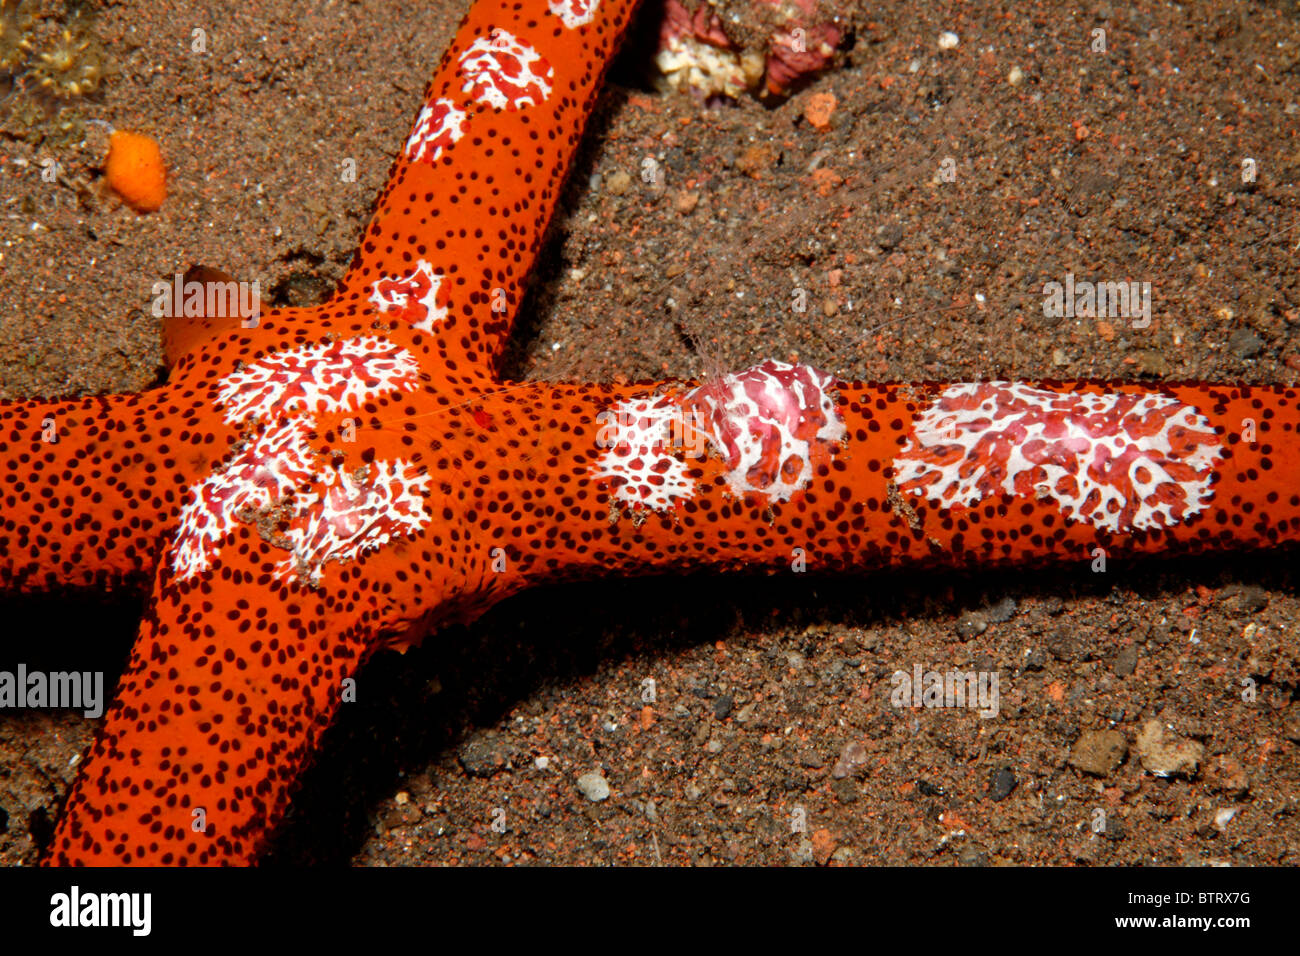 Ctenophora oder Rippenquallen, Coeloplana Astericola auf einen Seestern Echinaster Luzonicus Leben. Tulamben, Bali, Indonesien. Stockfoto